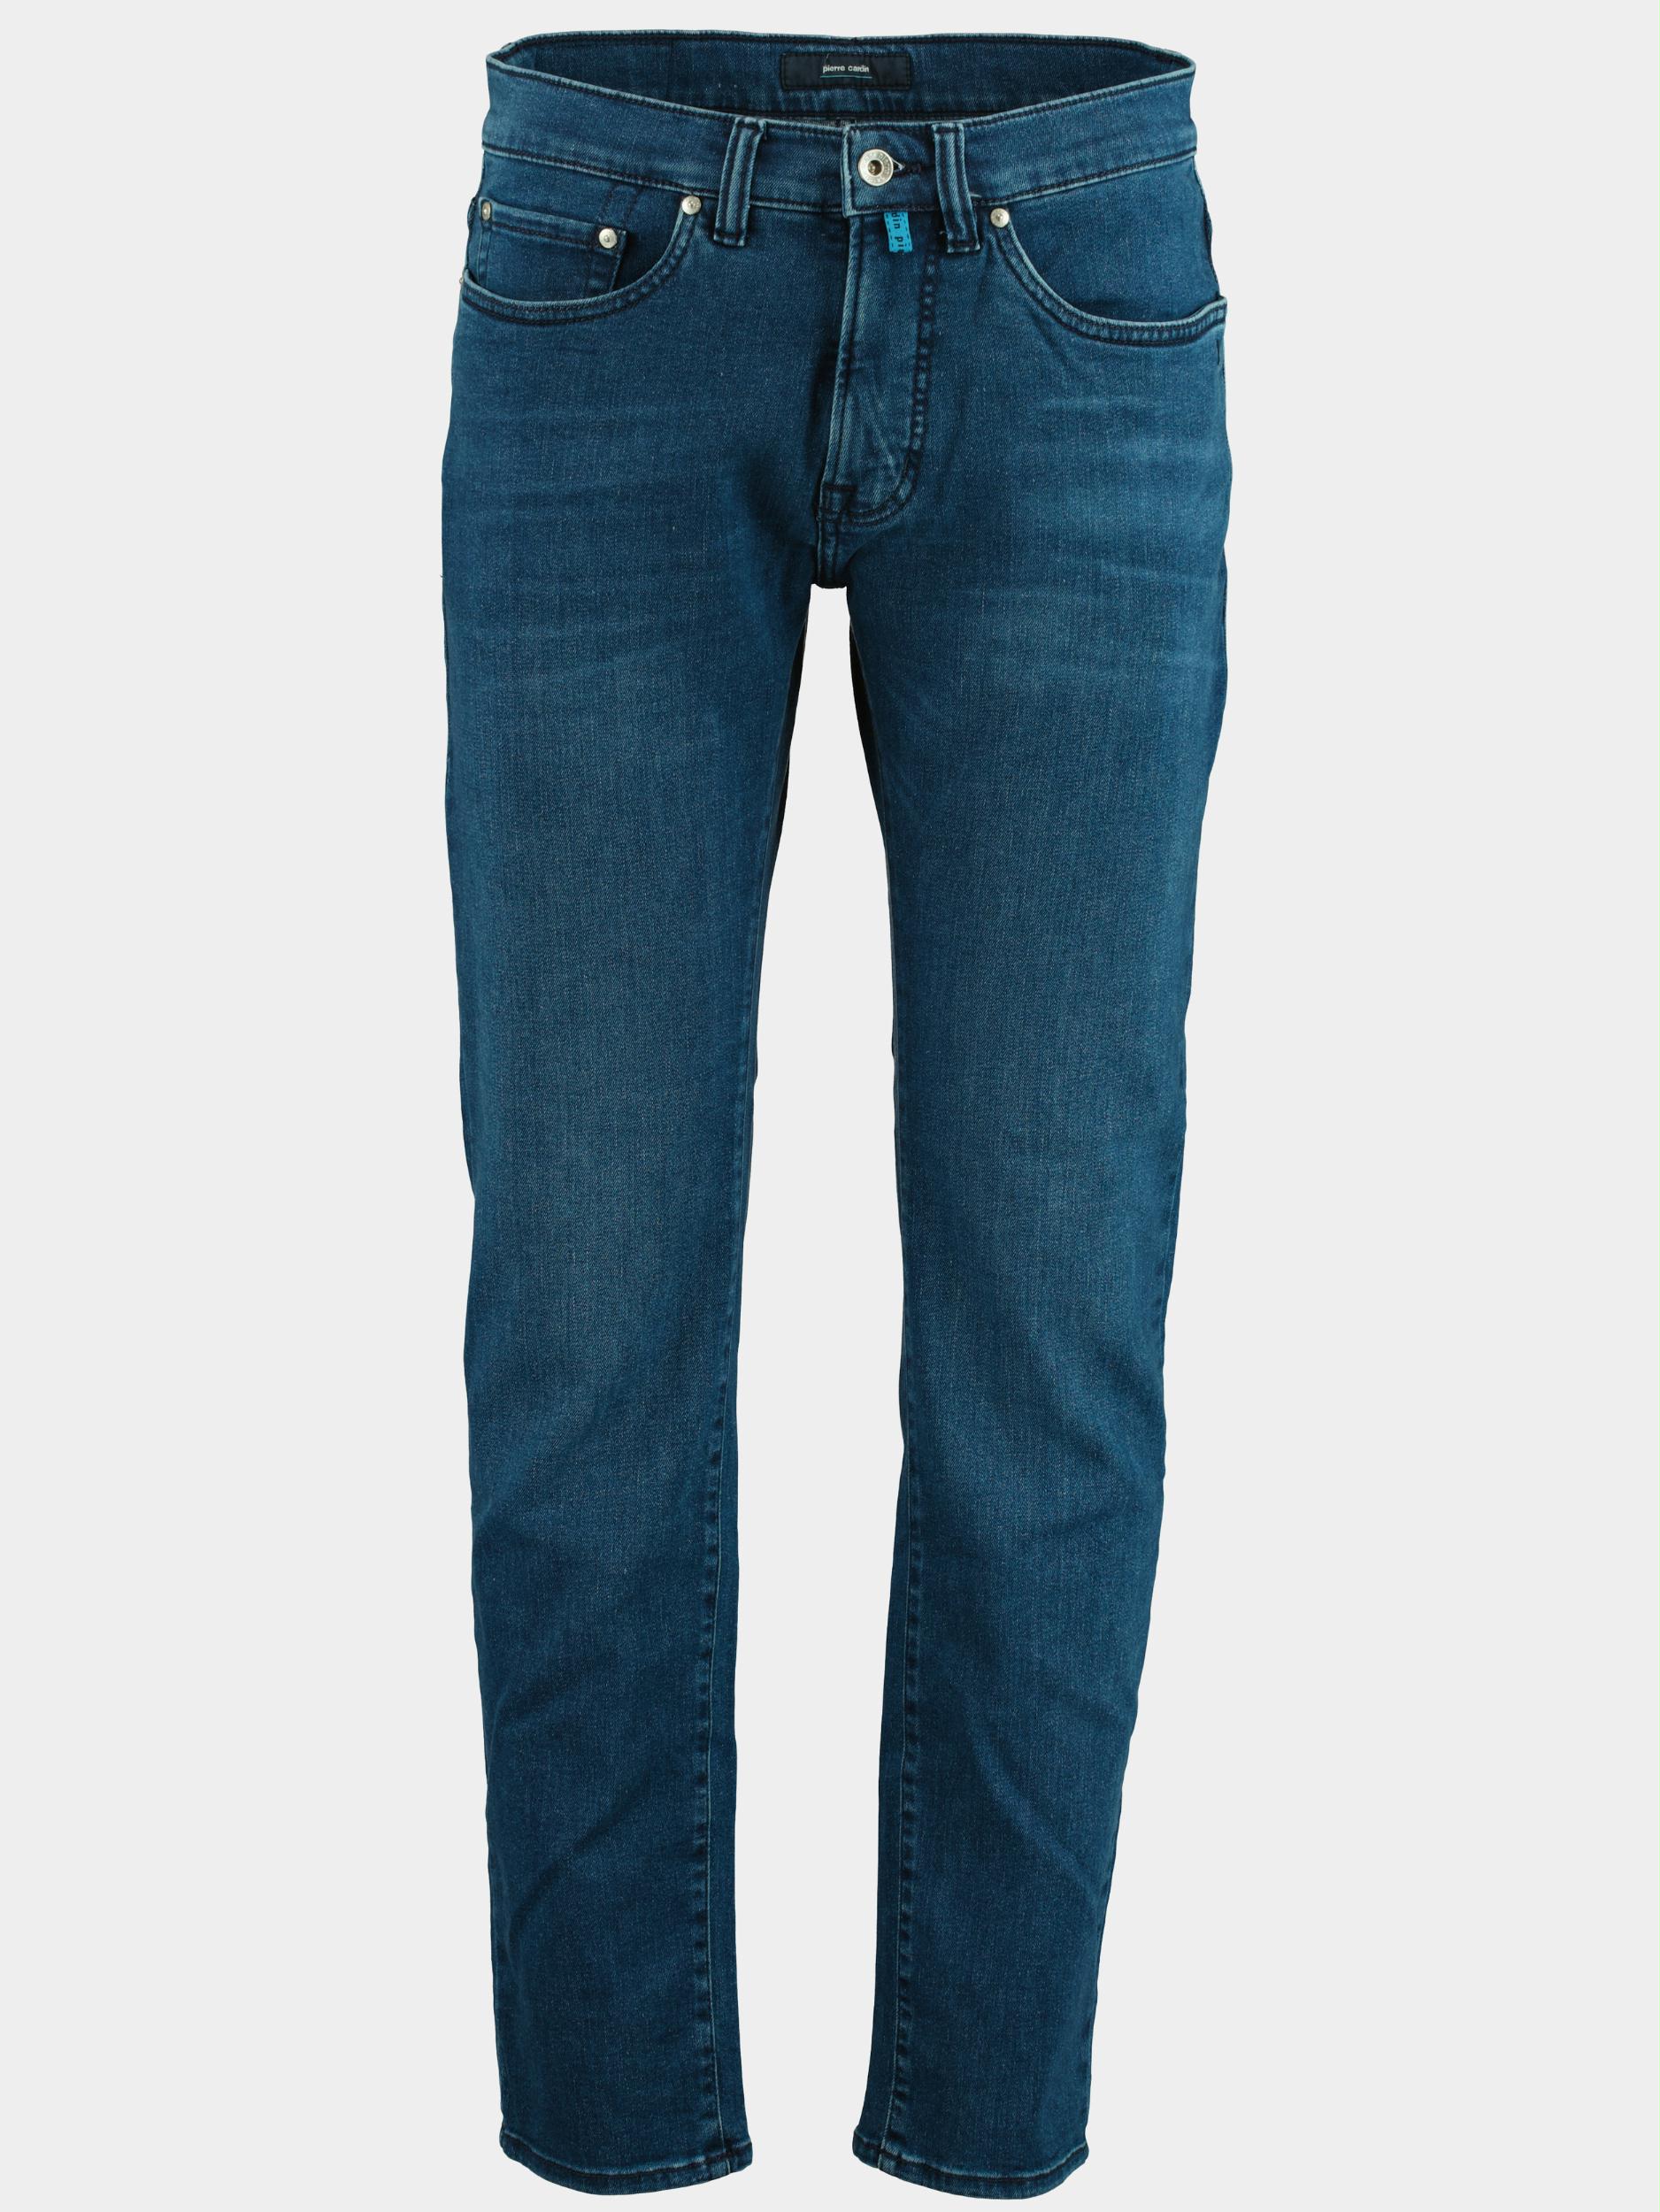 Pierre Cardin 5-Pocket Jeans Blauw  C7 30030.7715/6844